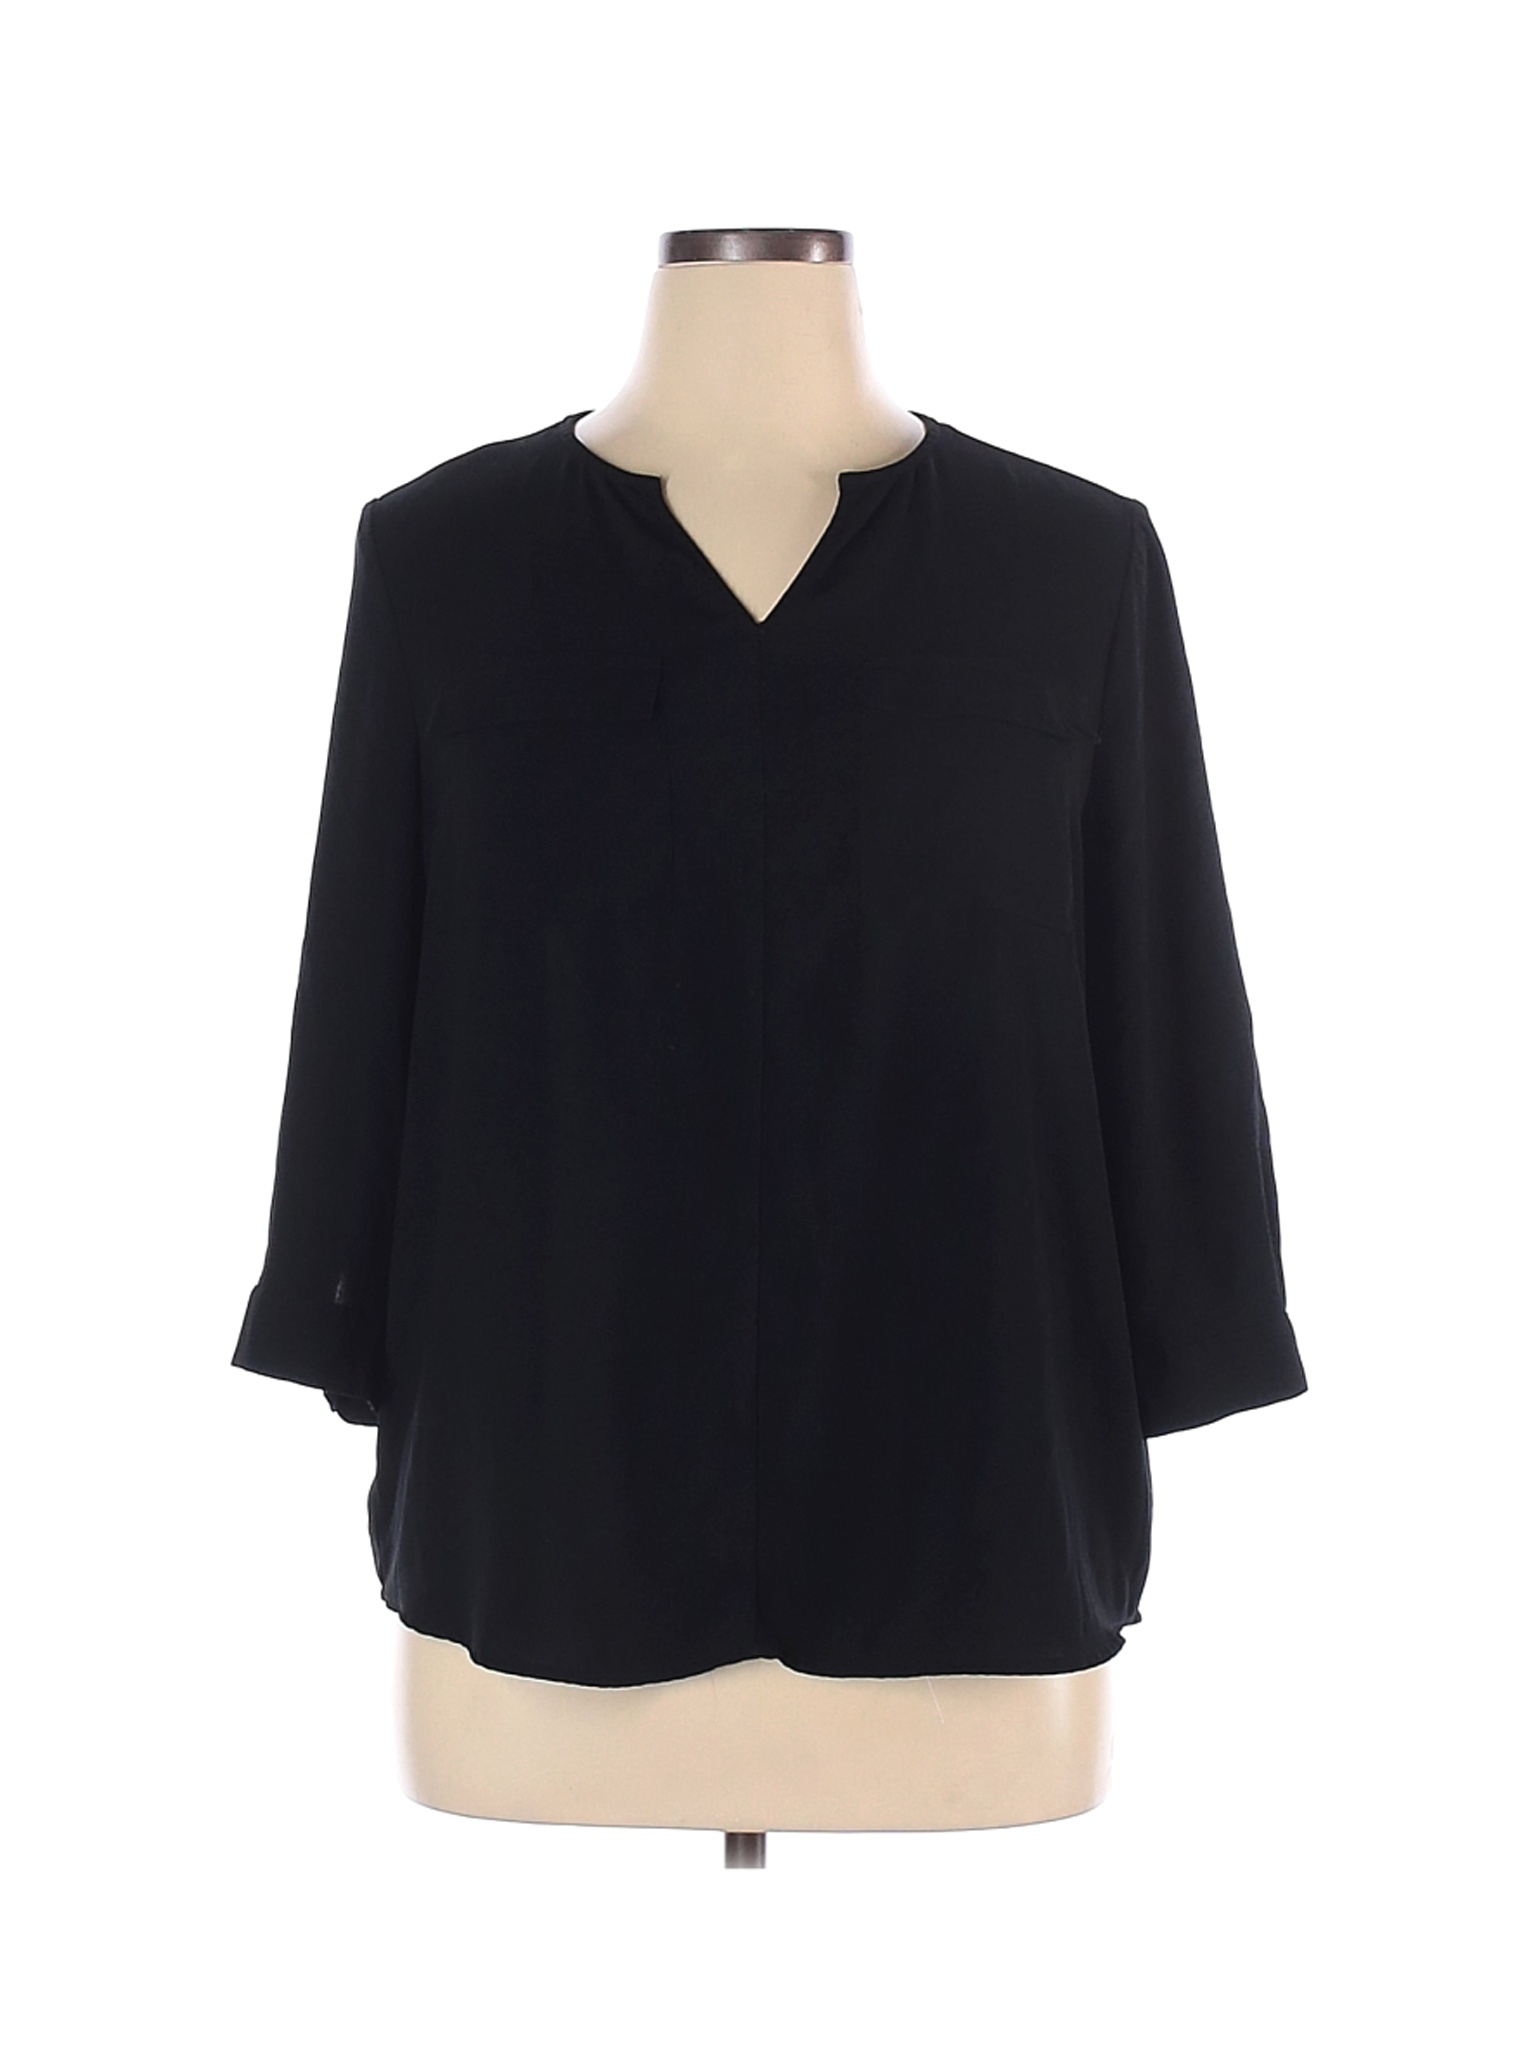 Apt. 9 Women Black 3/4 Sleeve Blouse XL | eBay